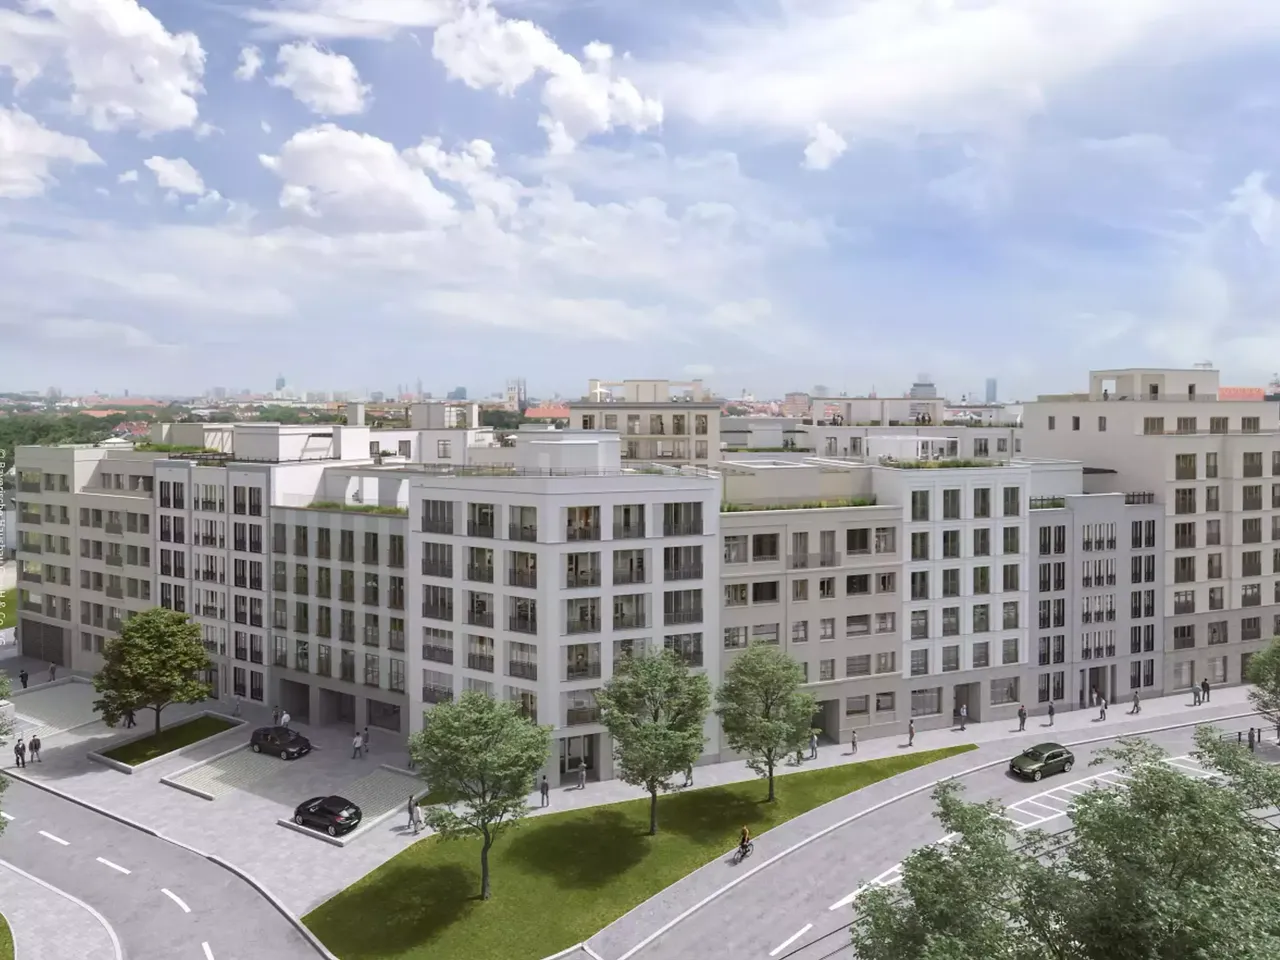 Außenansicht: Es wird die Fassade der hausInvest Immobilie Nockherberg in München abgebildet